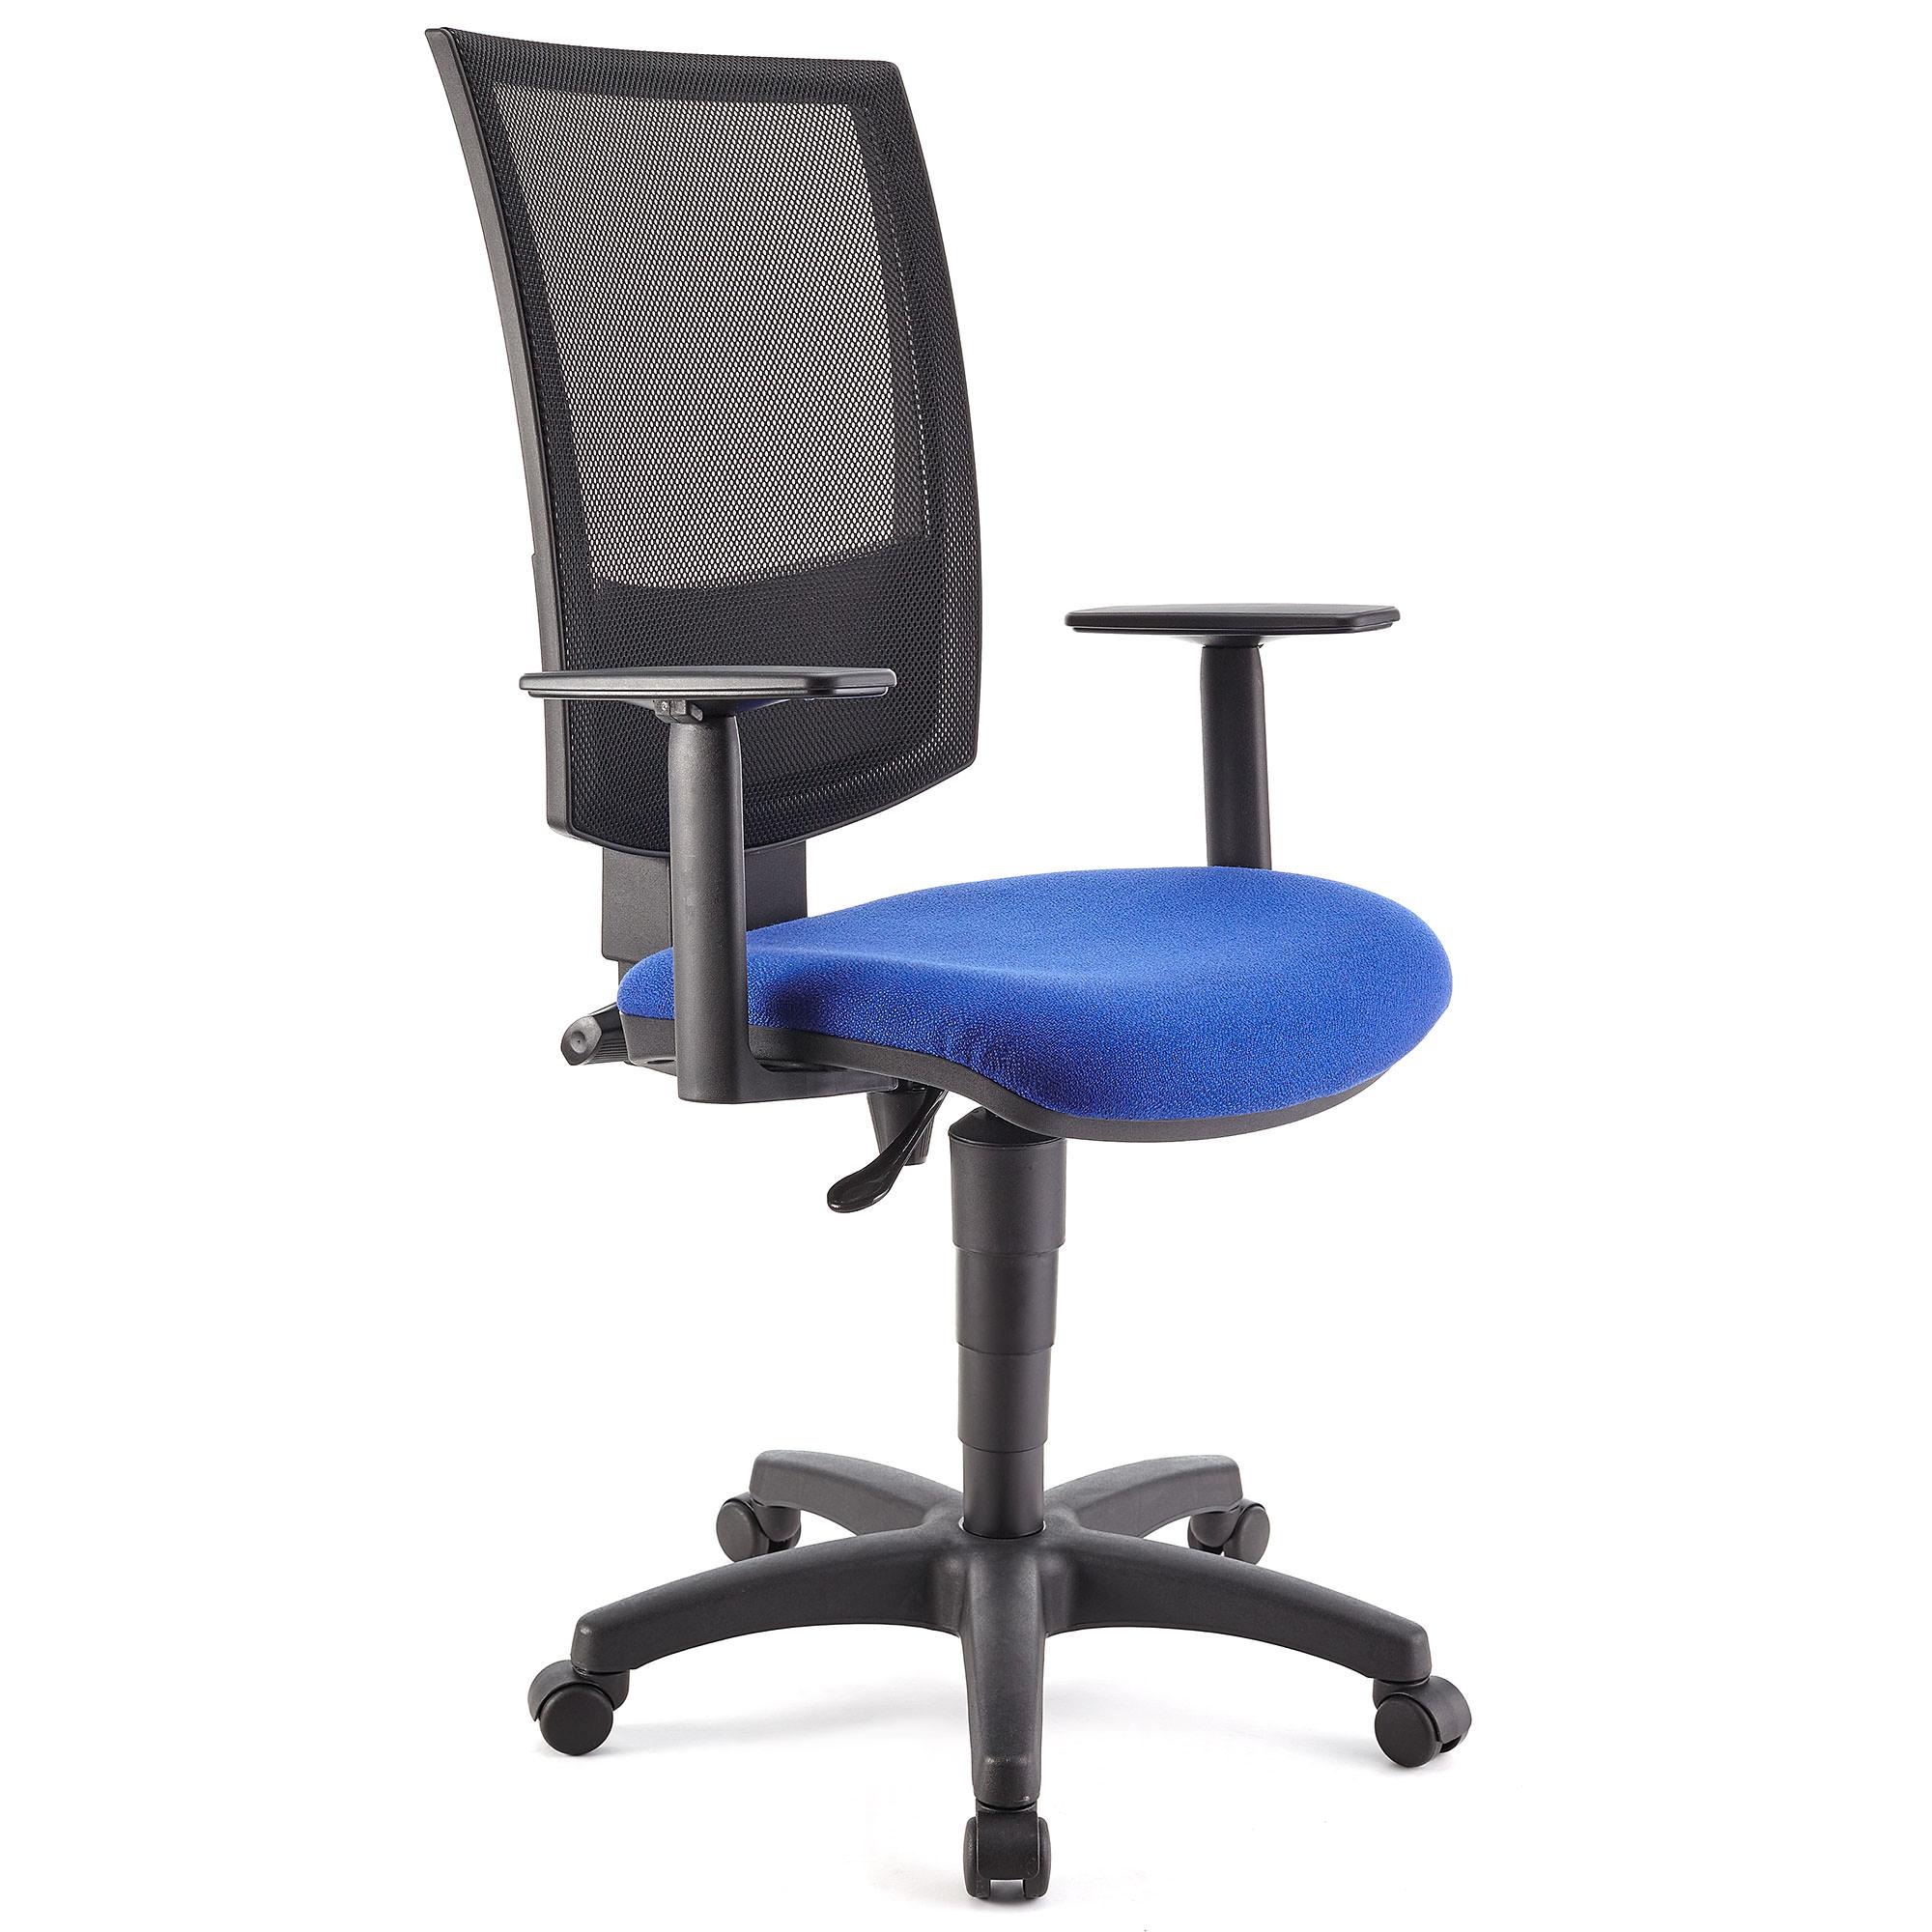 Cadeira de Escritório PANDORA PLUS, Encosto em Malha, Braços Ajustáveis, Bom Acolchoado, em Azul